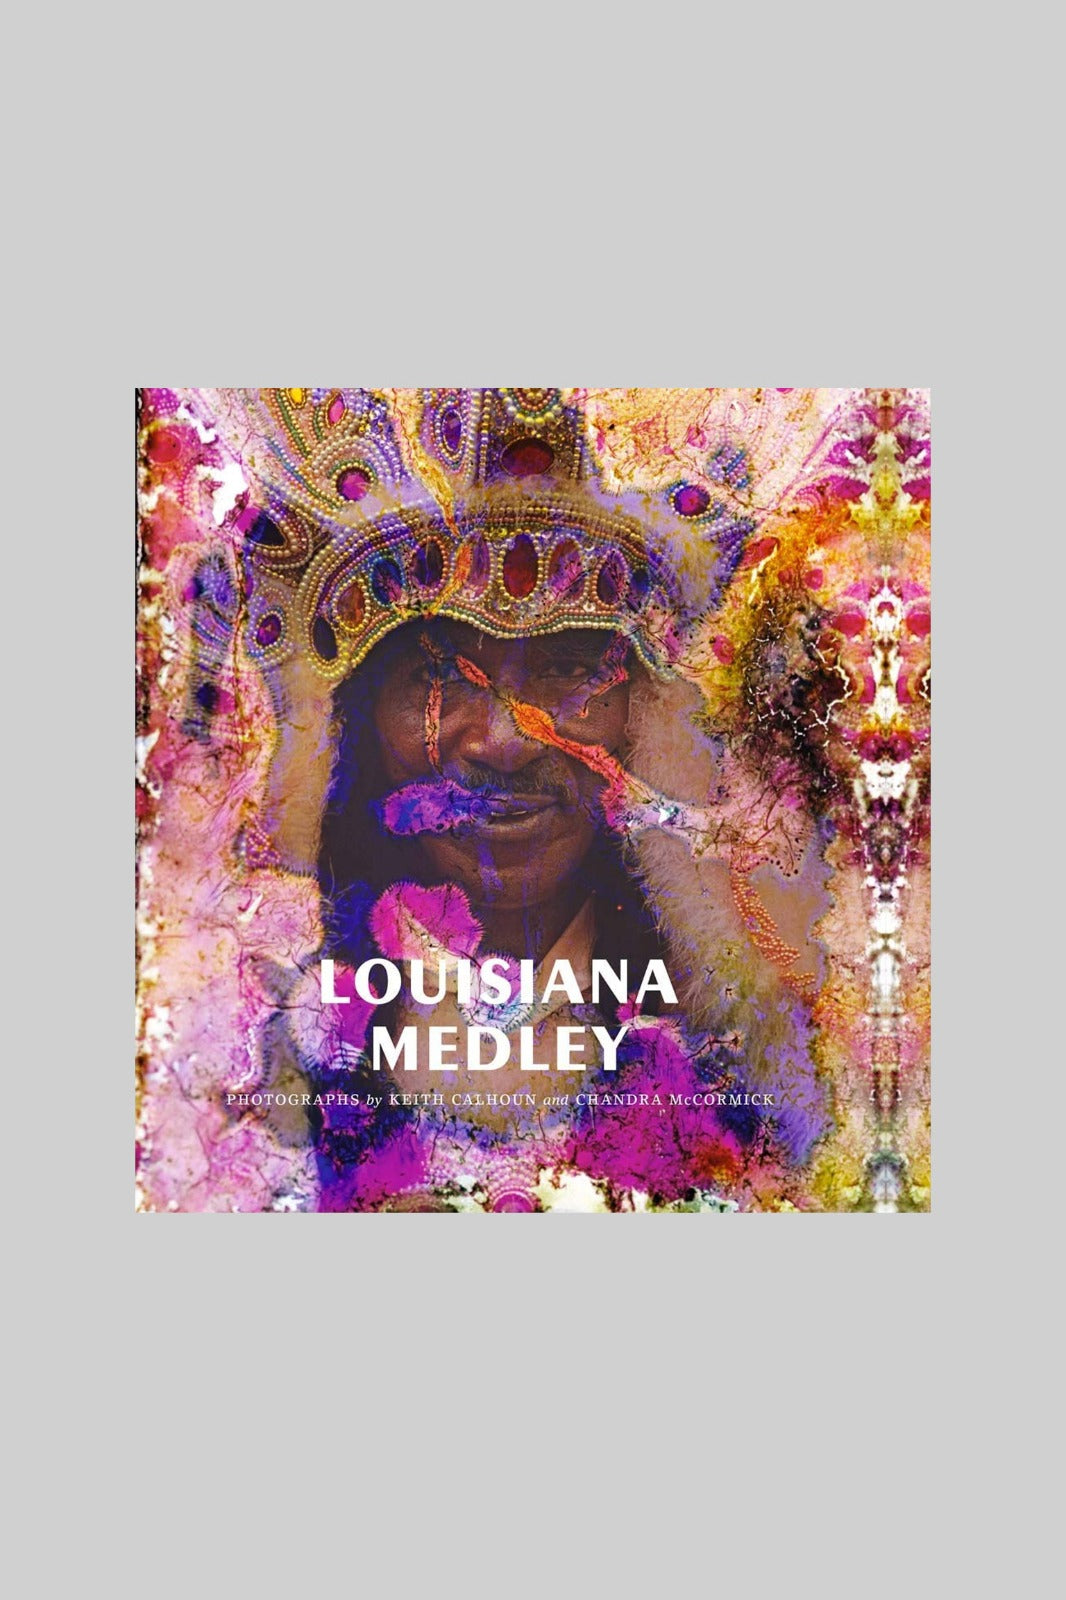 Louisiana Medley: Photographs by Keith Calhoun and Chandra McCormick (Hardcover)